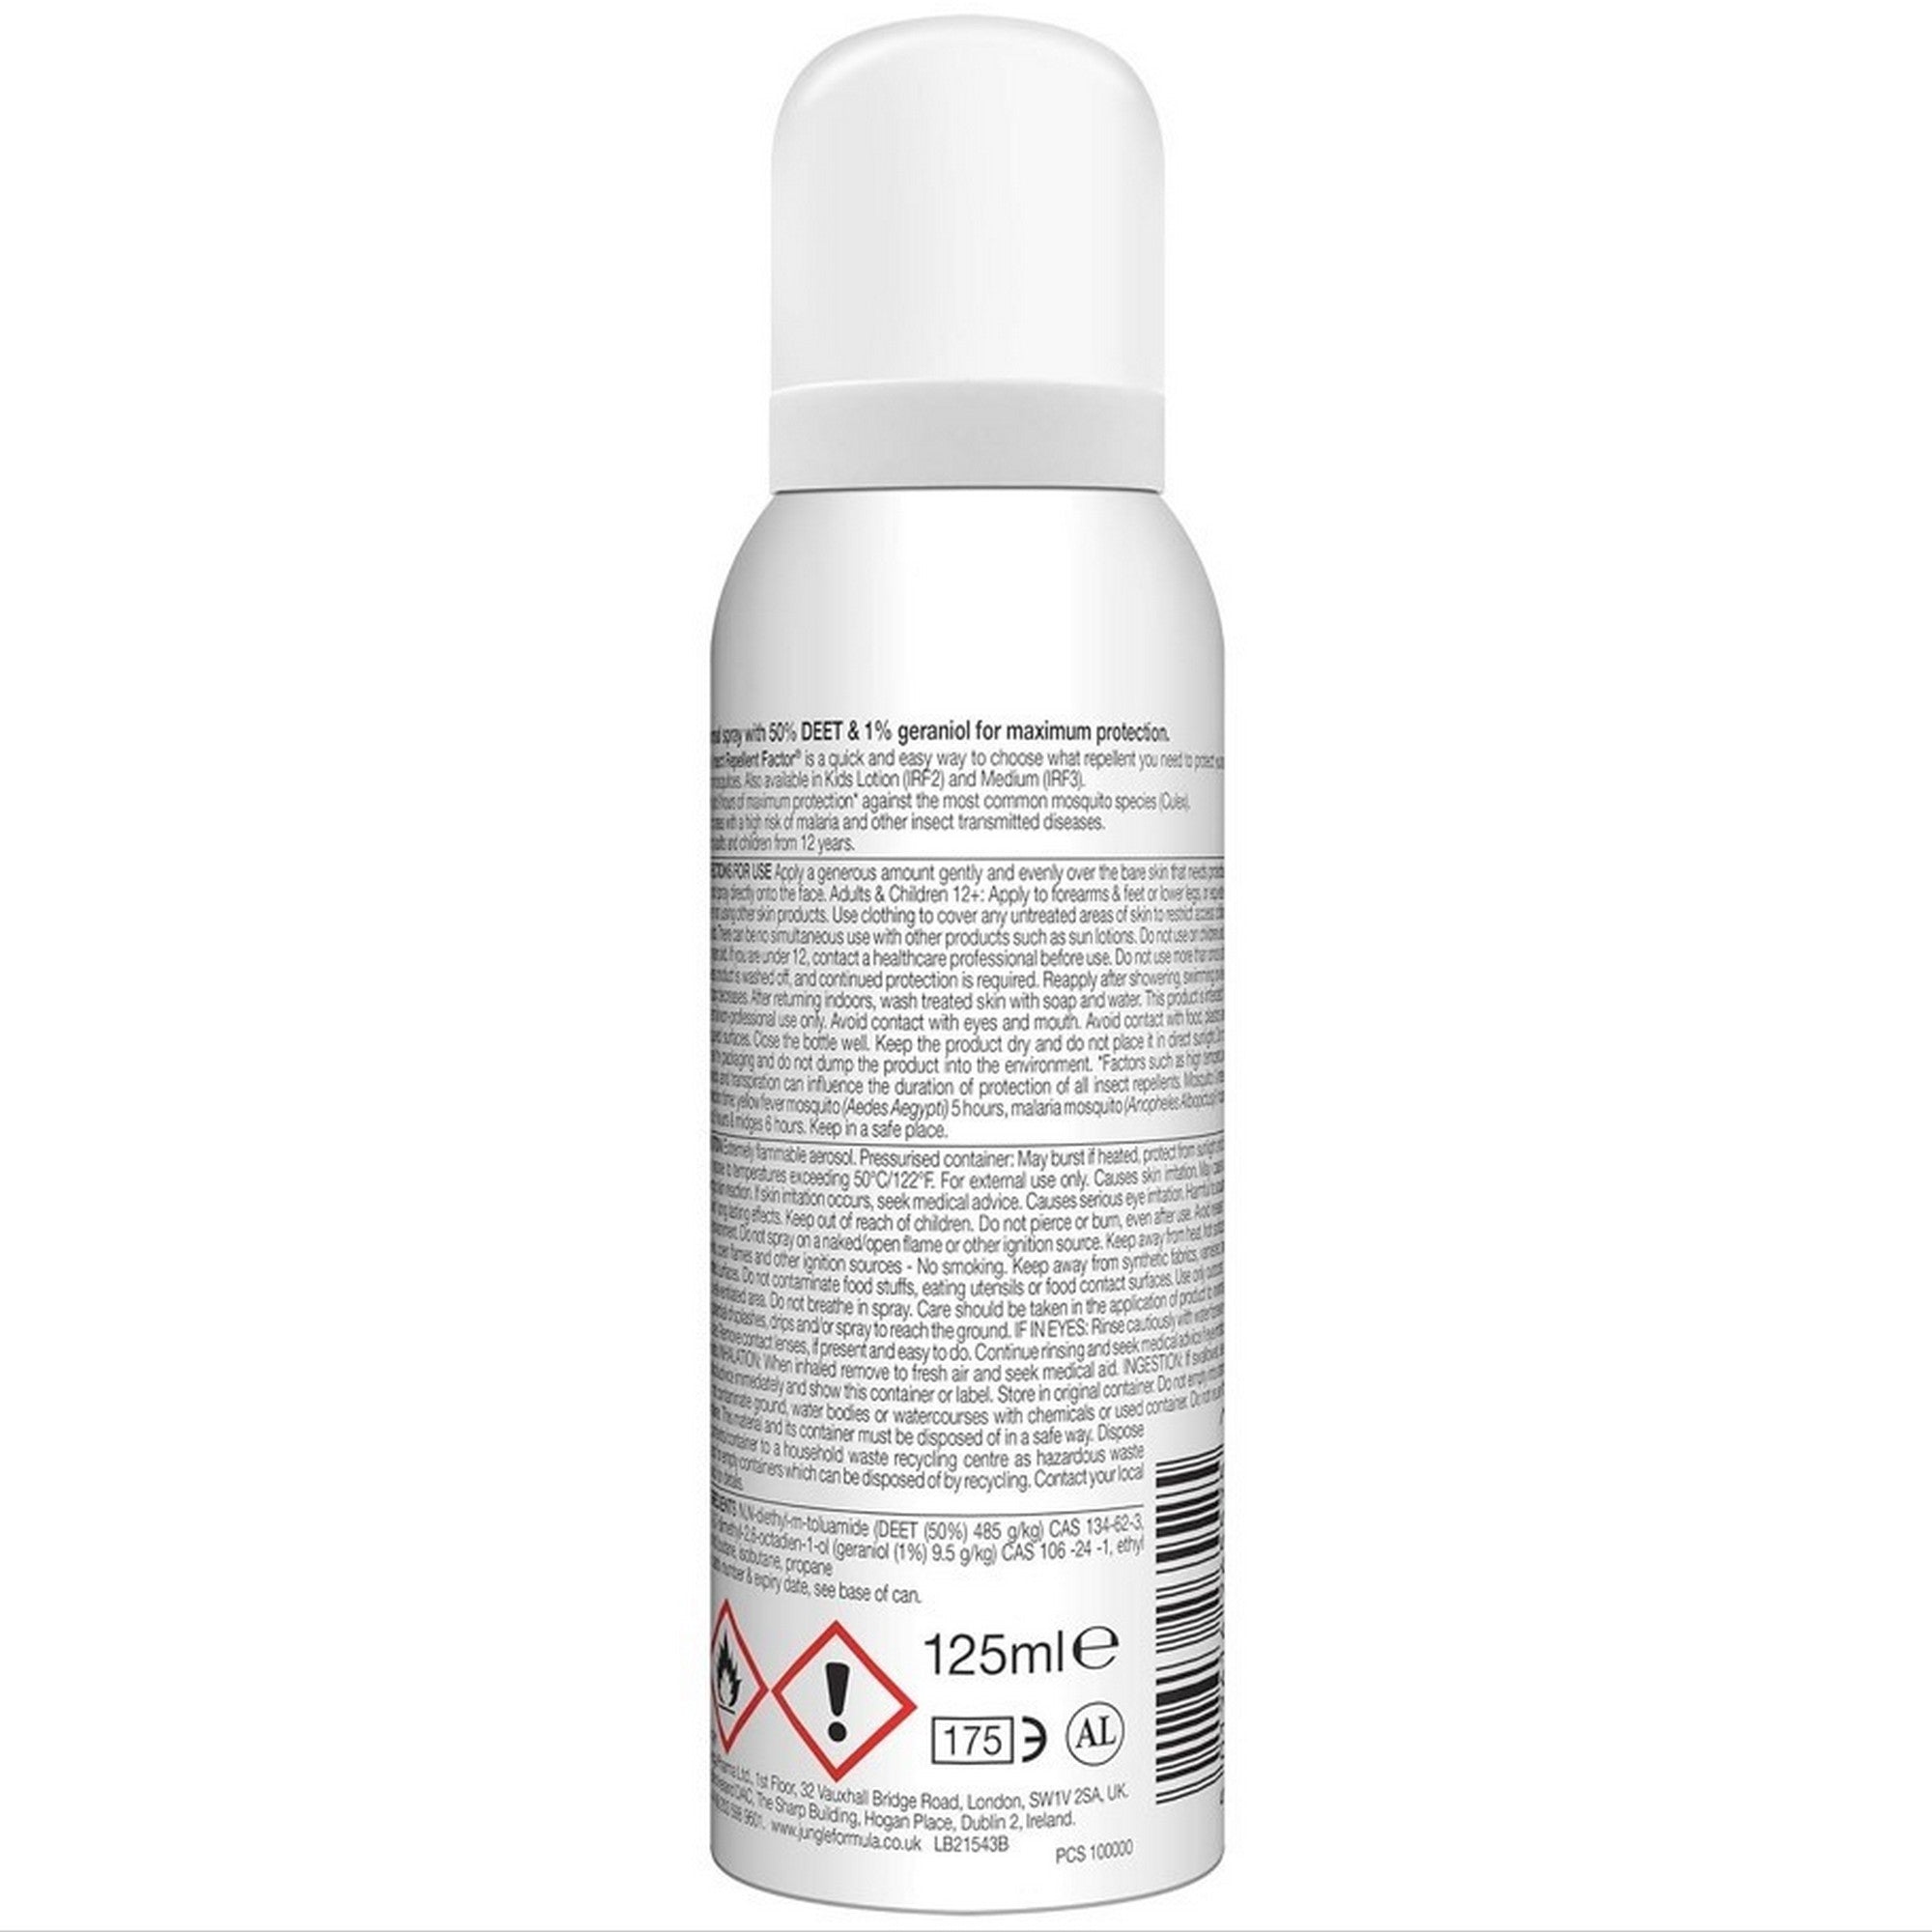 Jungle Formula Aerosol 50% Insect Repellent Spray - DEET 125ml